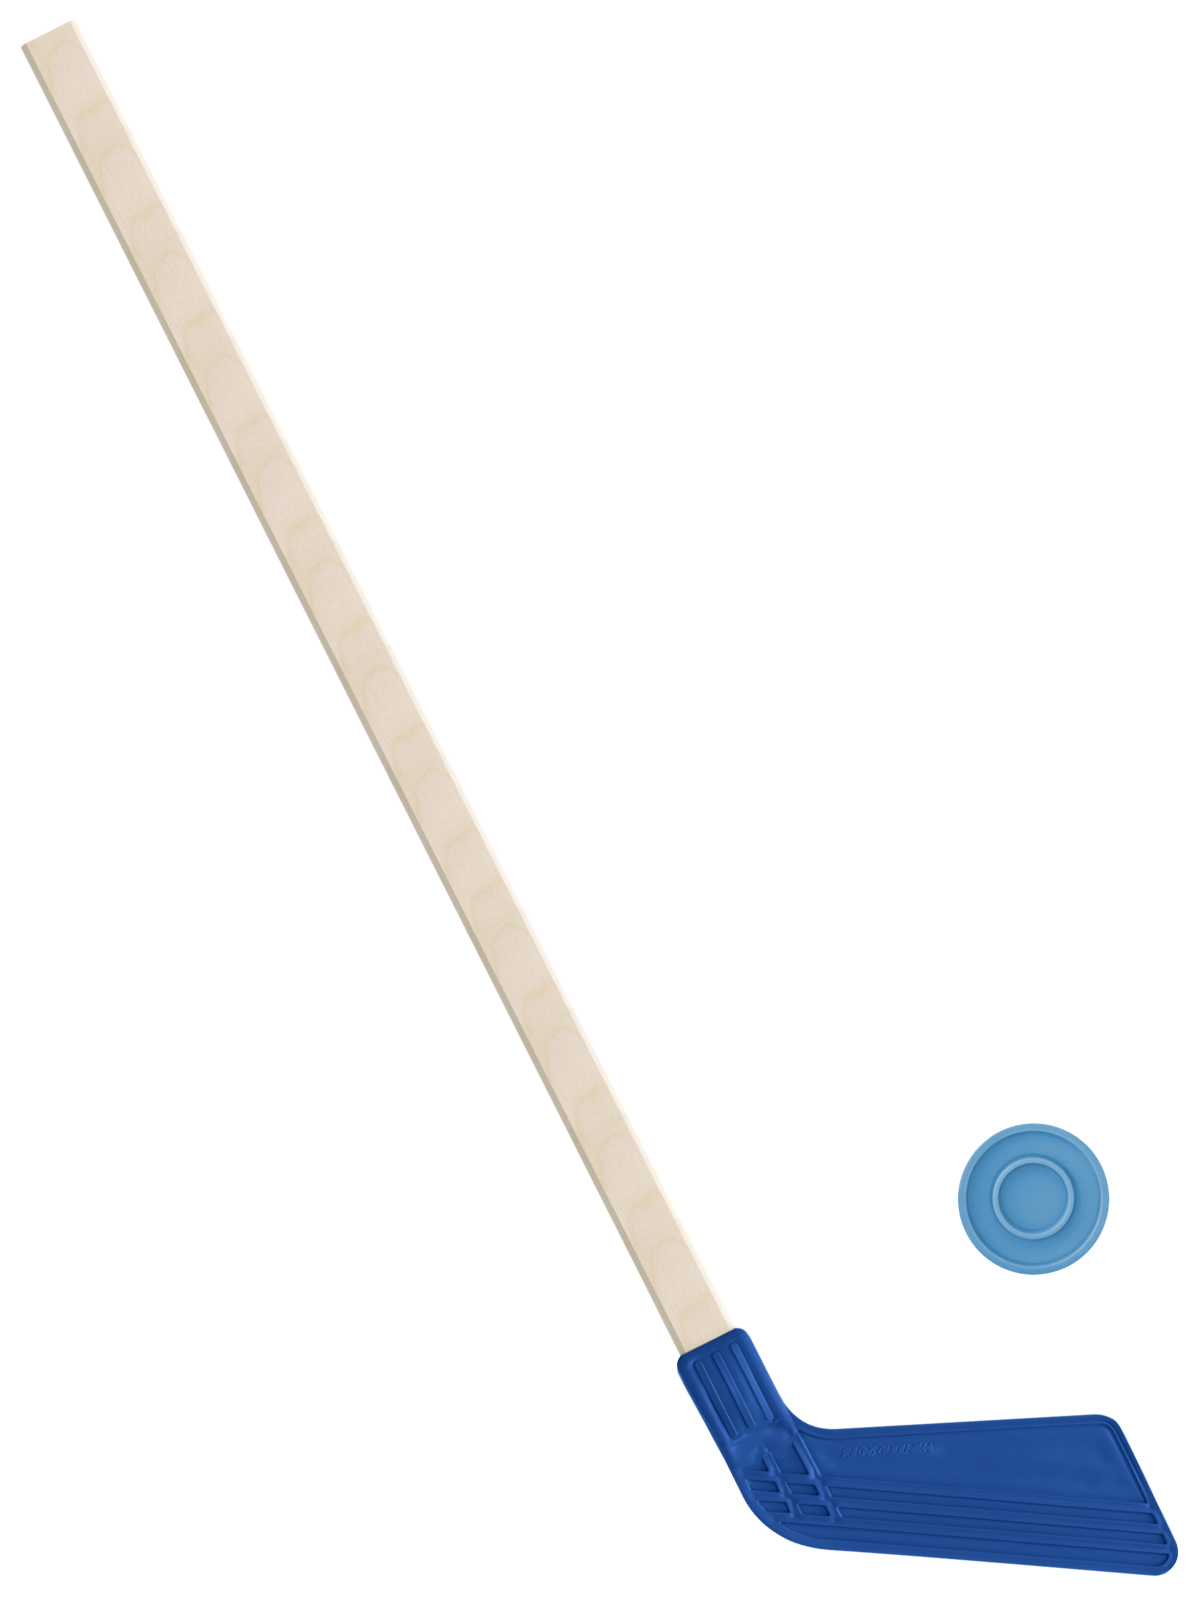 Детский хоккейный набор Задира-плюс, клюшка хоккейная 80 см (синяя)+шайба клюшка флорбольная acito master 35 orange 80 round правый 3006 123